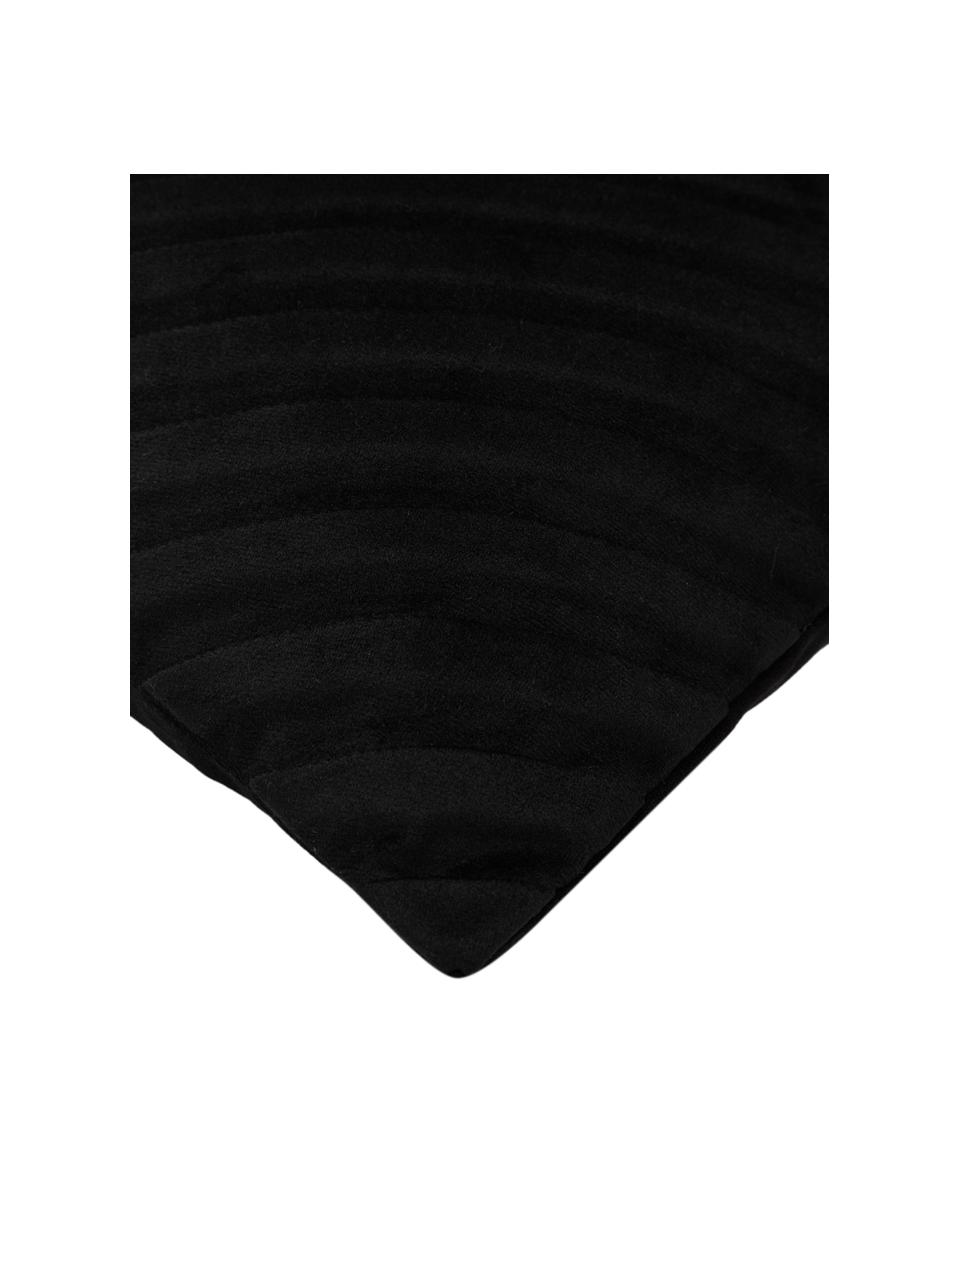 Poszewka na poduszkę z aksamitu Lucie, 100% aksamit (poliester), Czarny, S 45 x D 45 cm